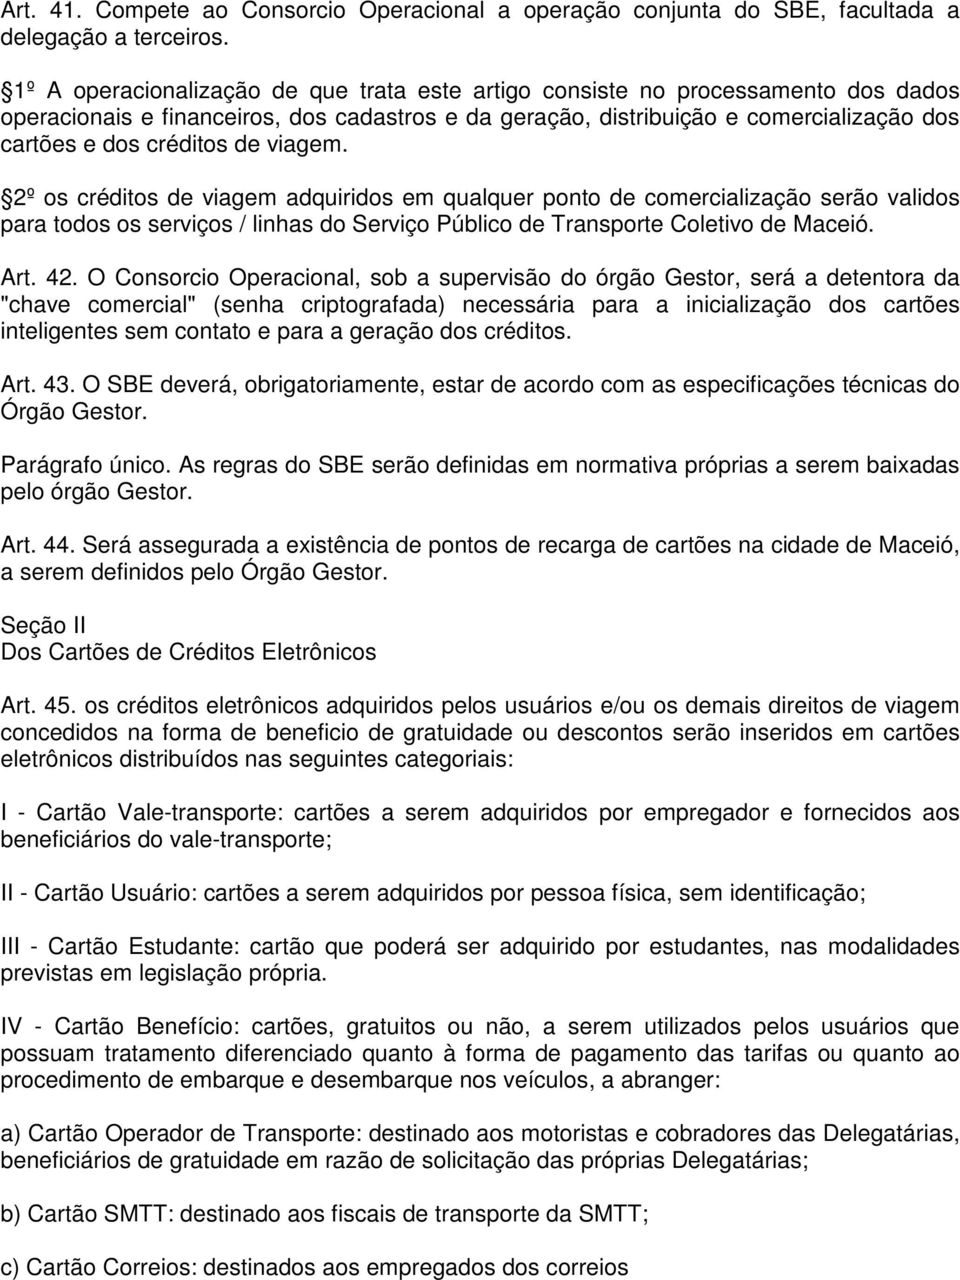 de viagem. 2º os créditos de viagem adquiridos em qualquer ponto de comercialização serão validos para todos os serviços / linhas do Serviço Público de Transporte Coletivo de Maceió. Art. 42.